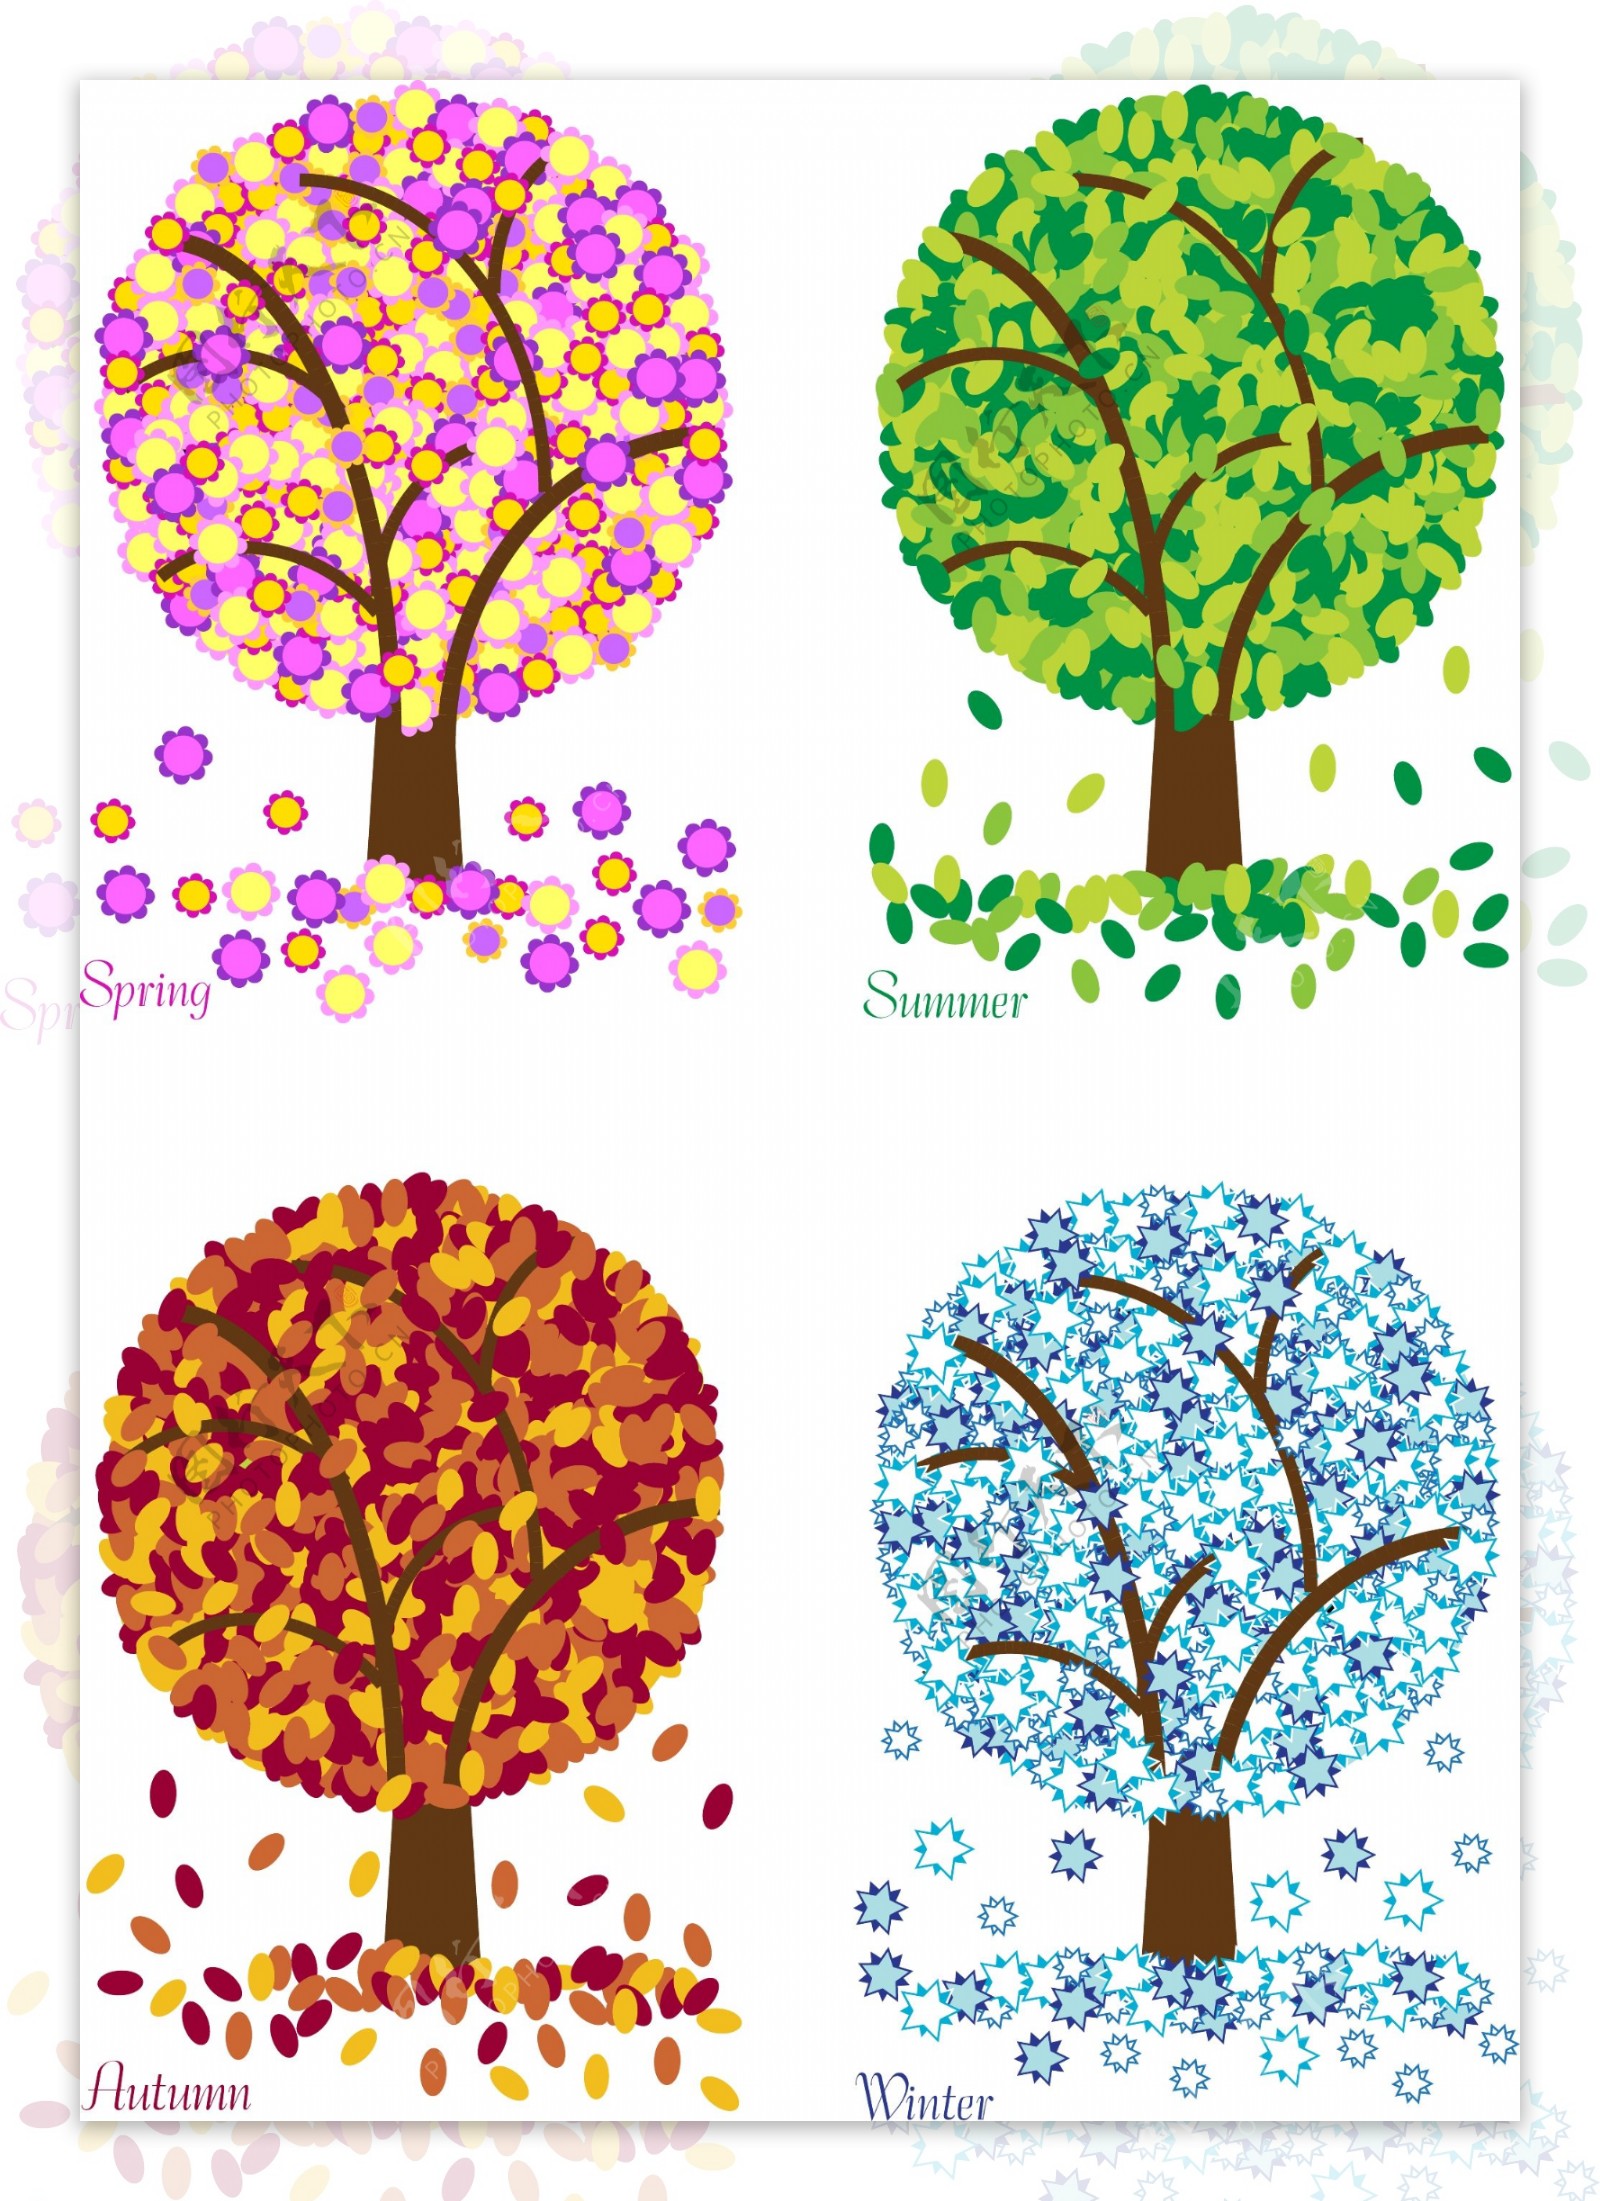 四季树木